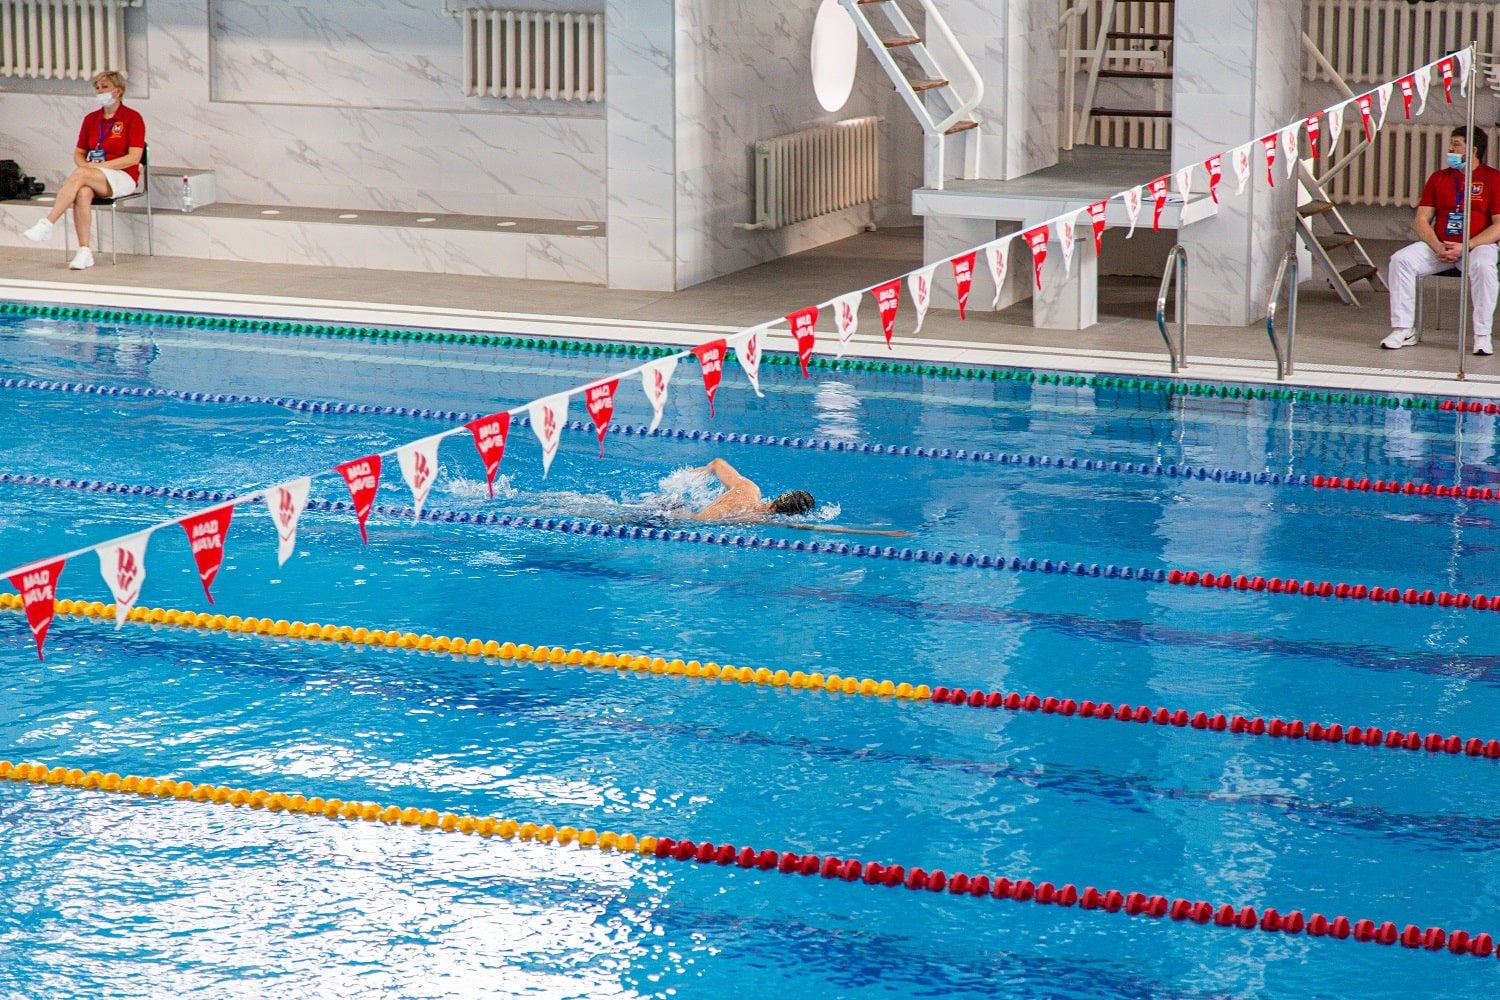 Калининград впервые принимает чемпионат и первенство СЗФО по плаванию.